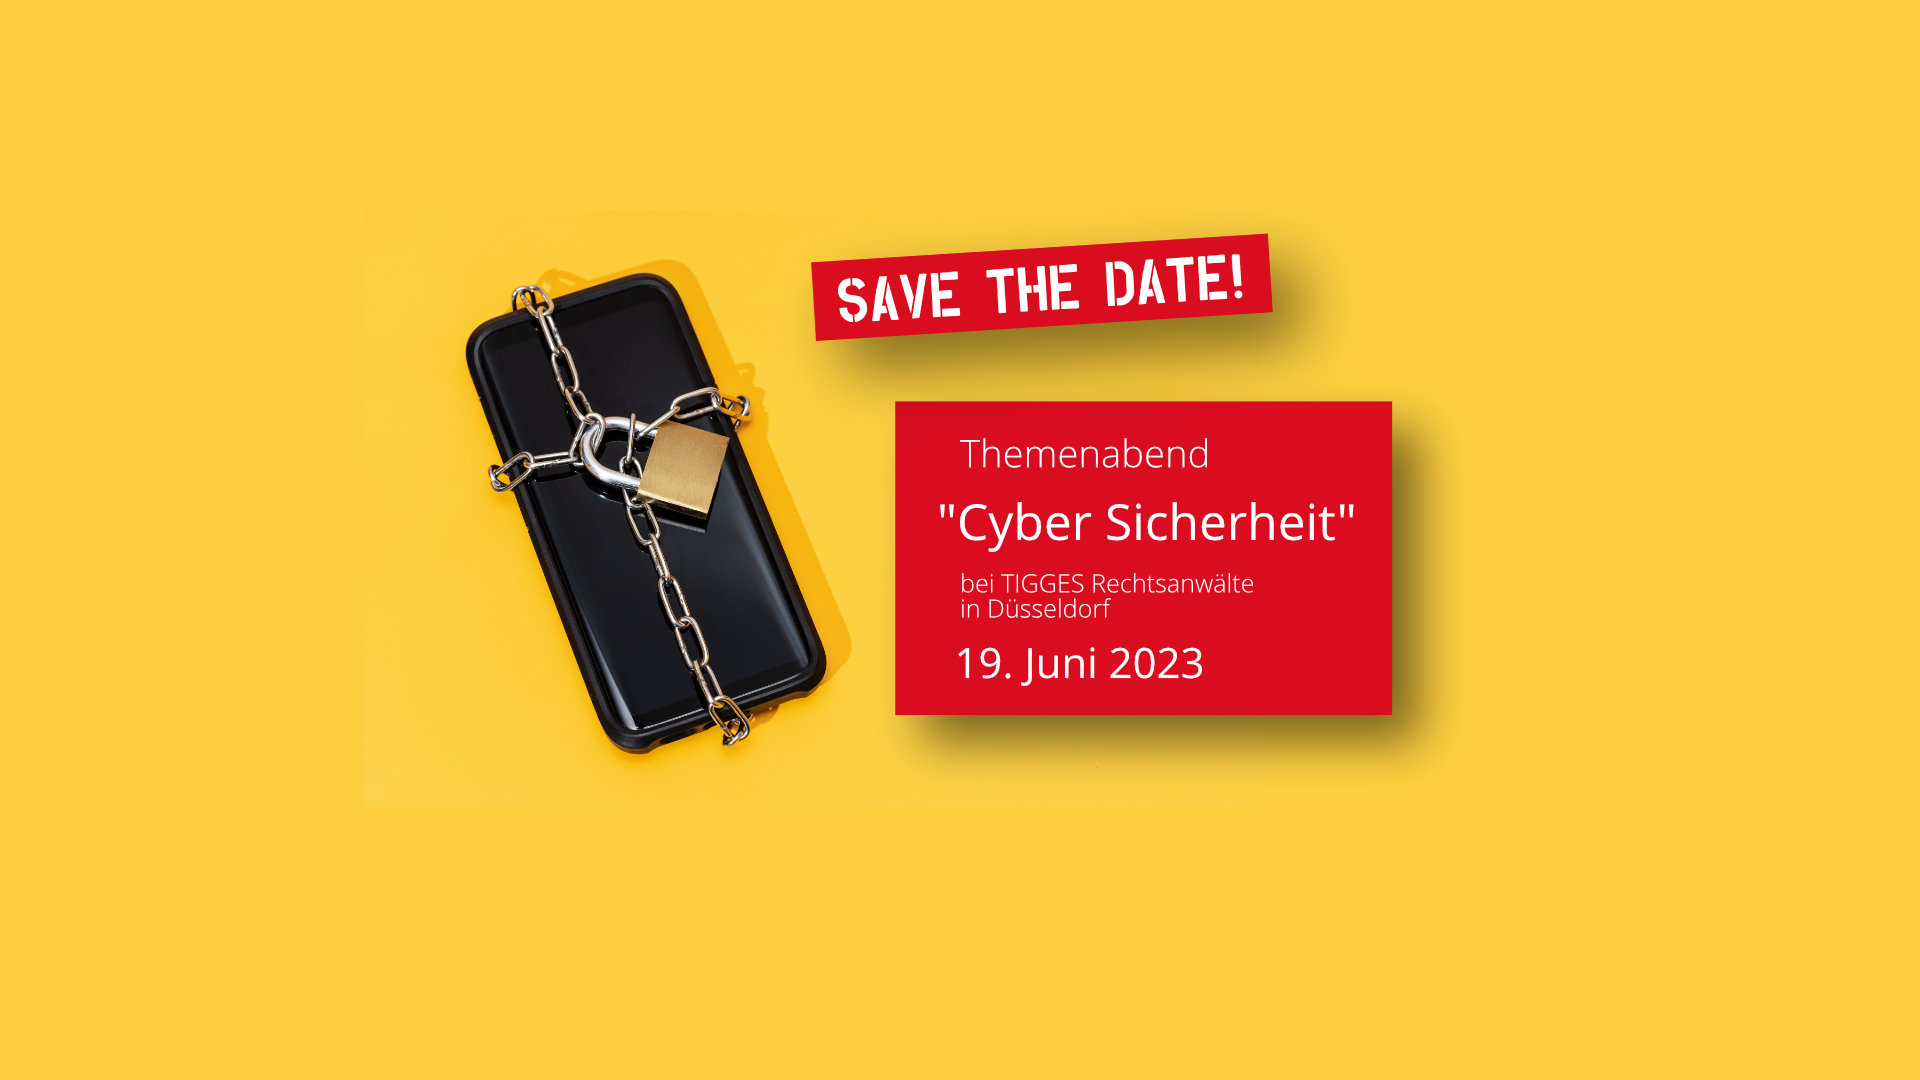 Save the Date: Themenabend Cyber Sicherheit